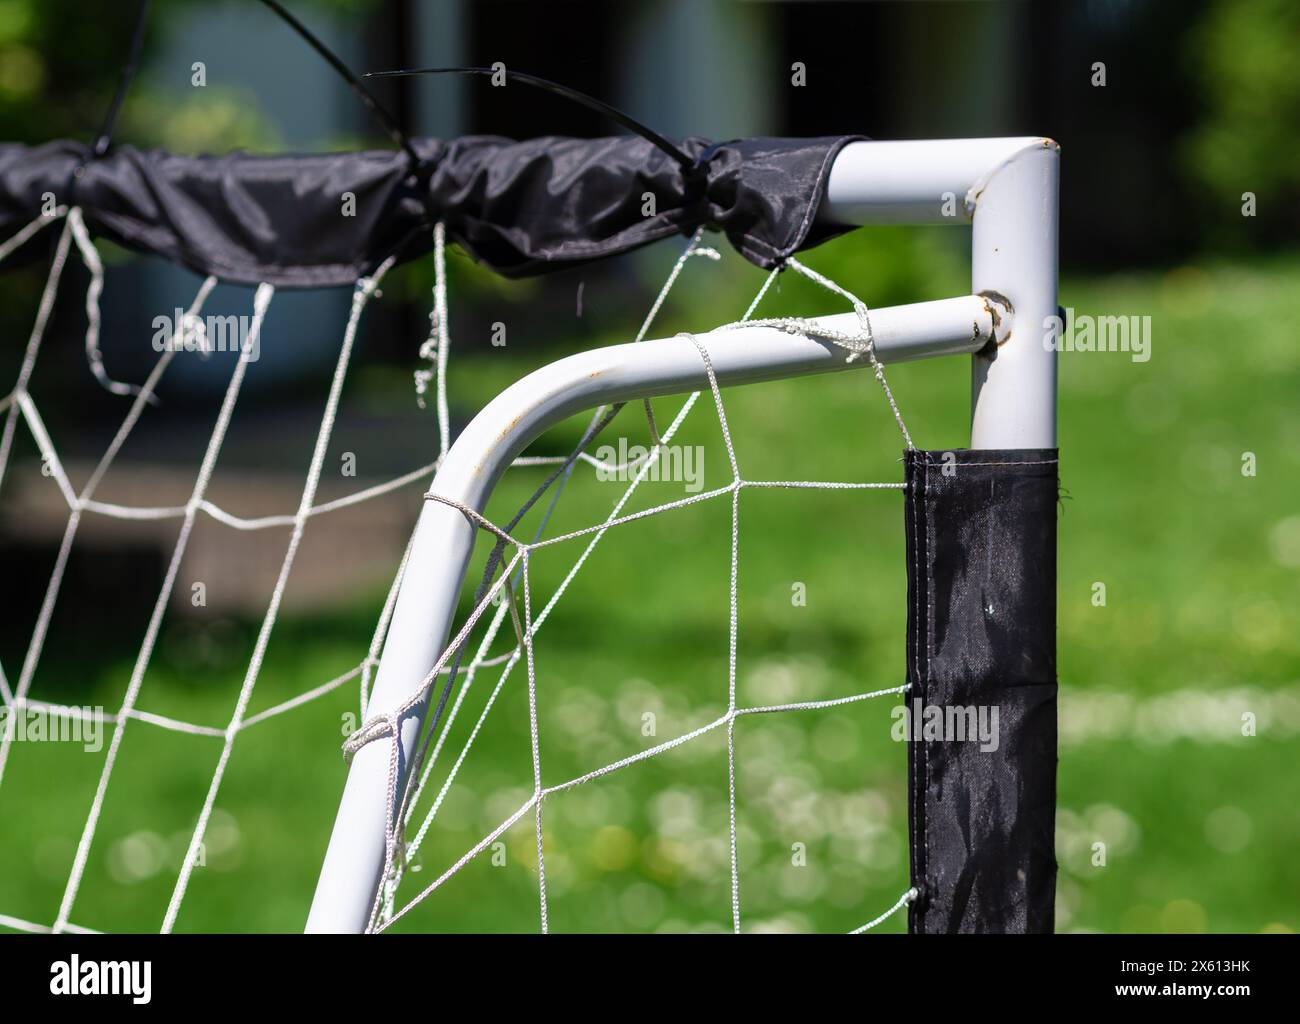 Primo piano di un obiettivo di calcio fai da te realizzato con tubi in PVC bianco con rete usurata in un parco, perfetto per temi ricreativi o sportivi della comunità. Foto Stock